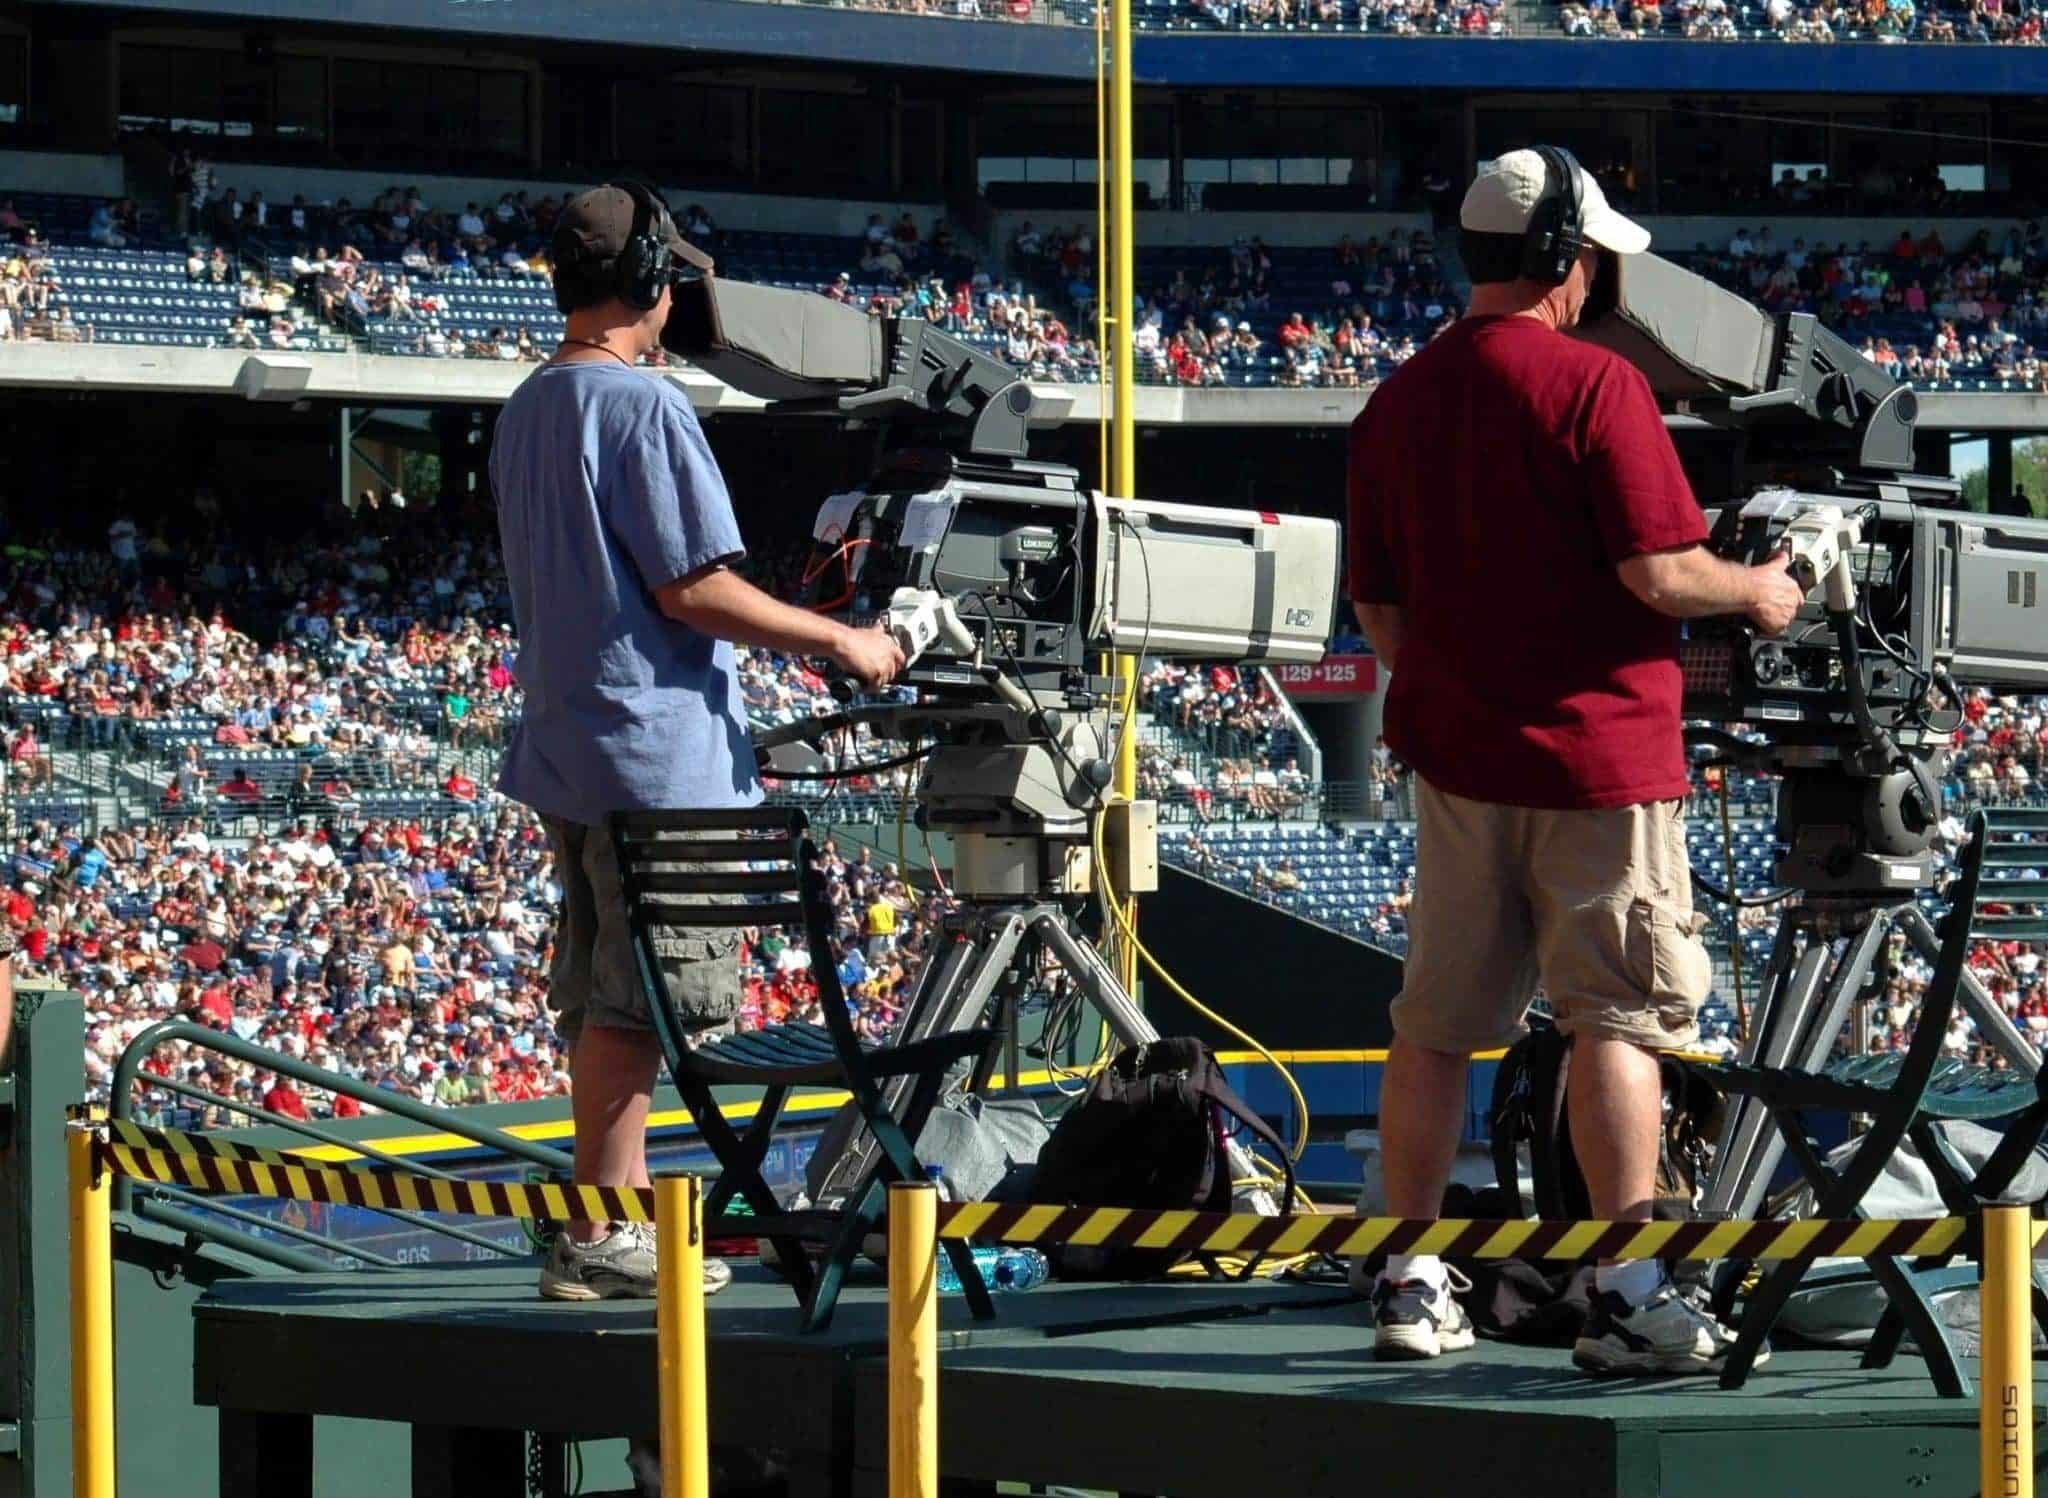 Two TV cameramen filming a sports event